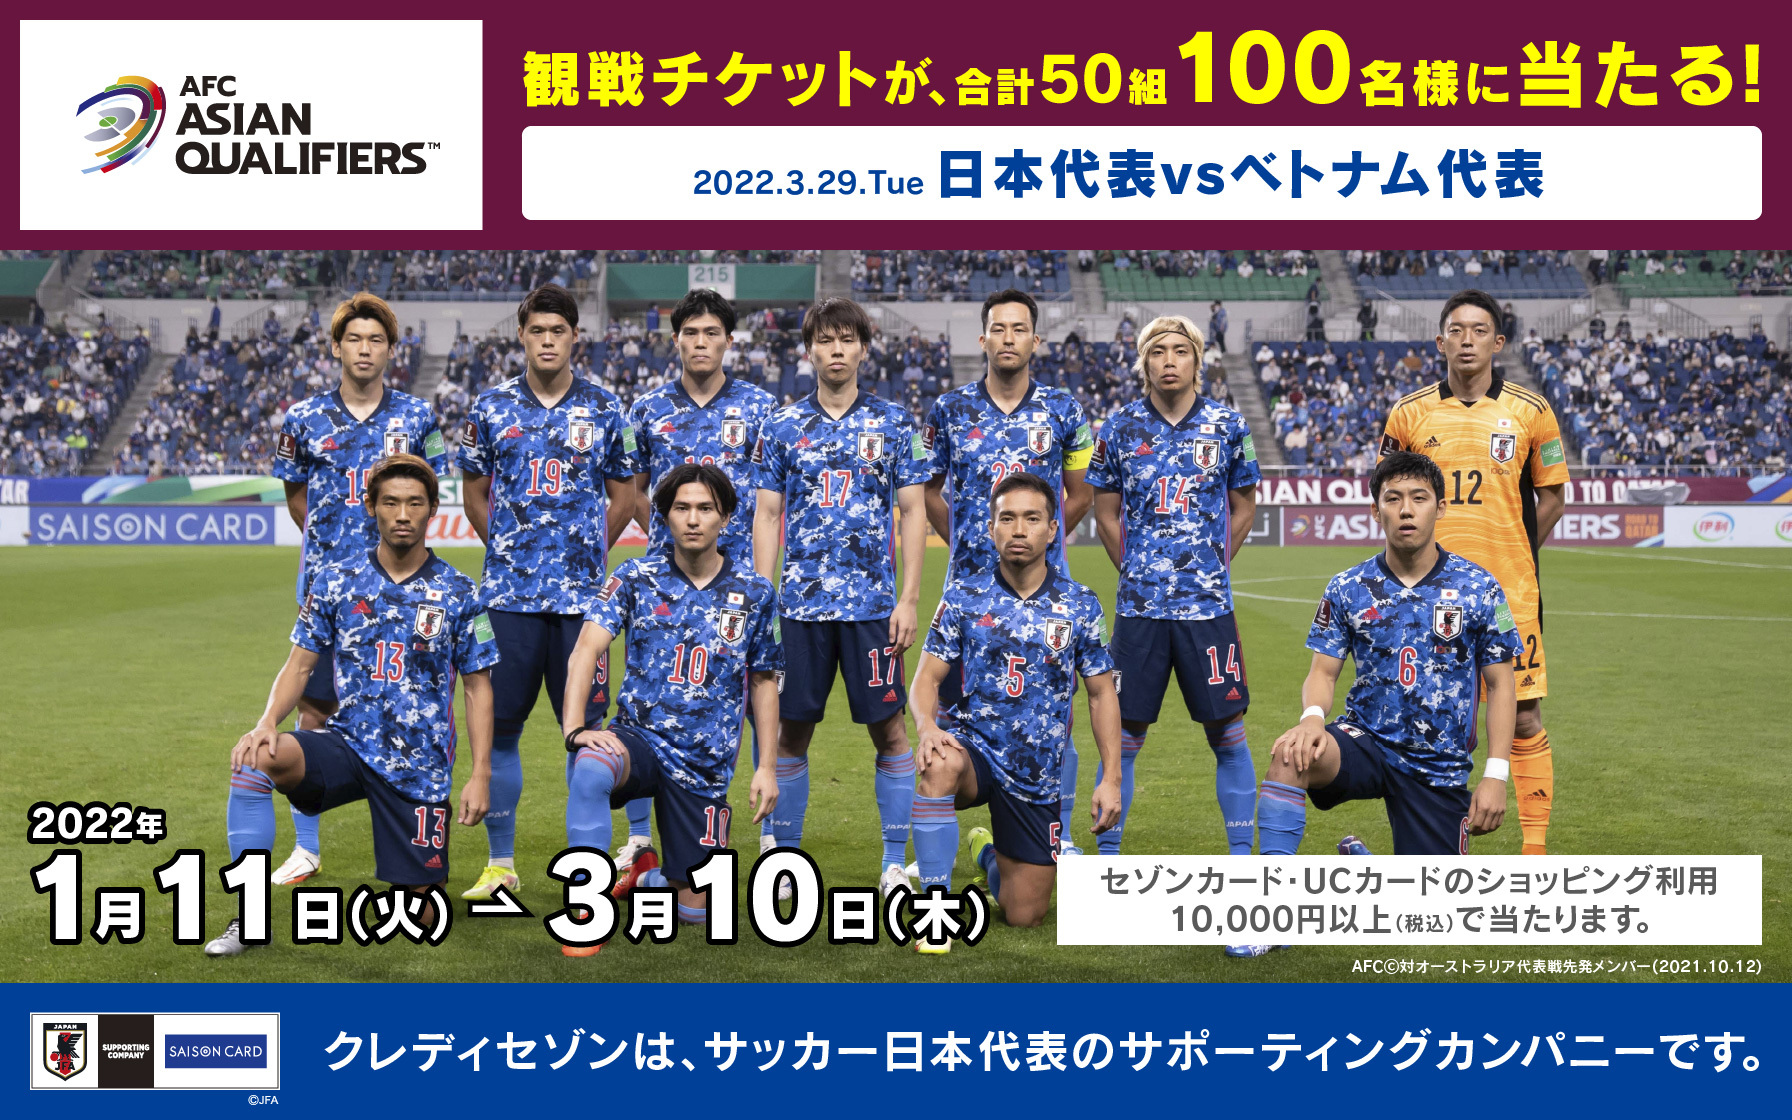 50組100名様にチケット当たる サッカー日本代表応援キャンペーン プレゼント キャンペーン情報 クレジットカードはucカード